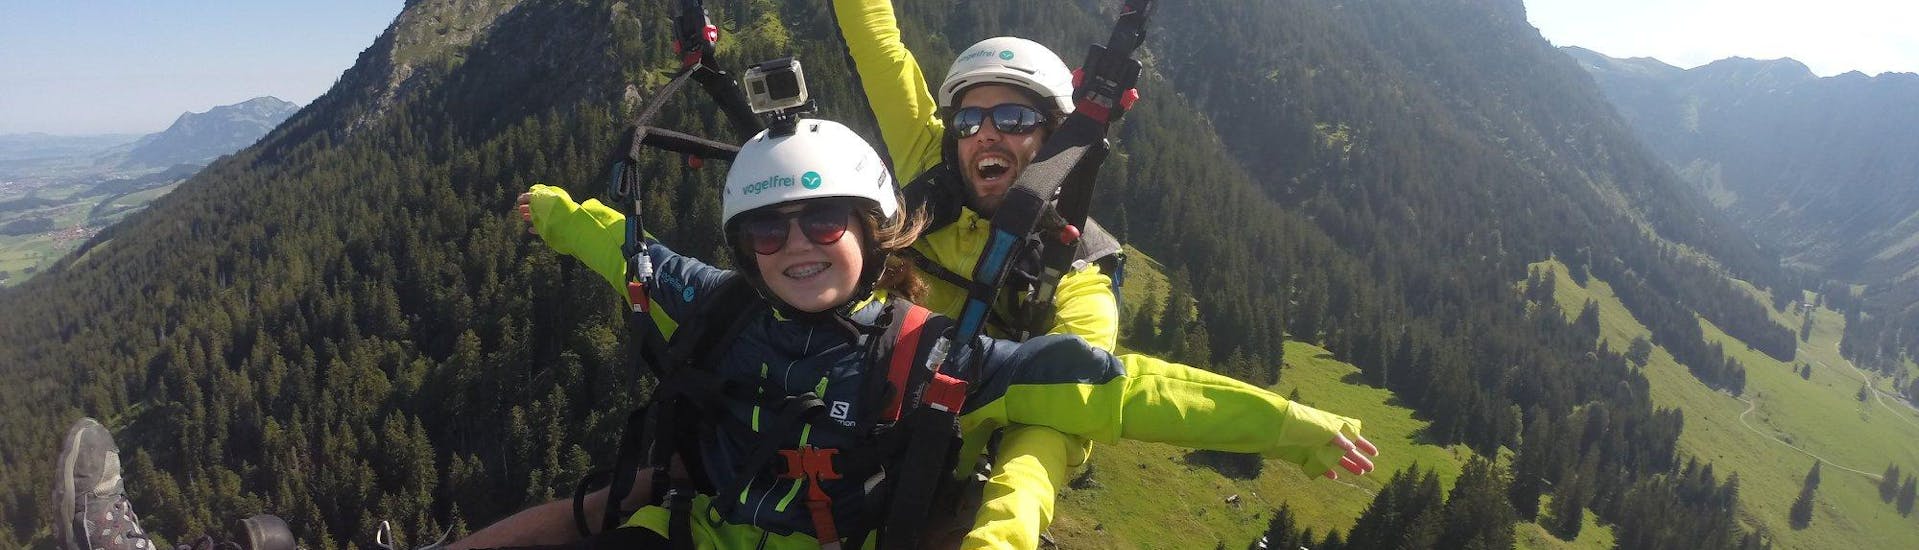 Volo acrobatico in parapendio biposto a Oberstdorf (da 3 anni) - Nebelhorn.